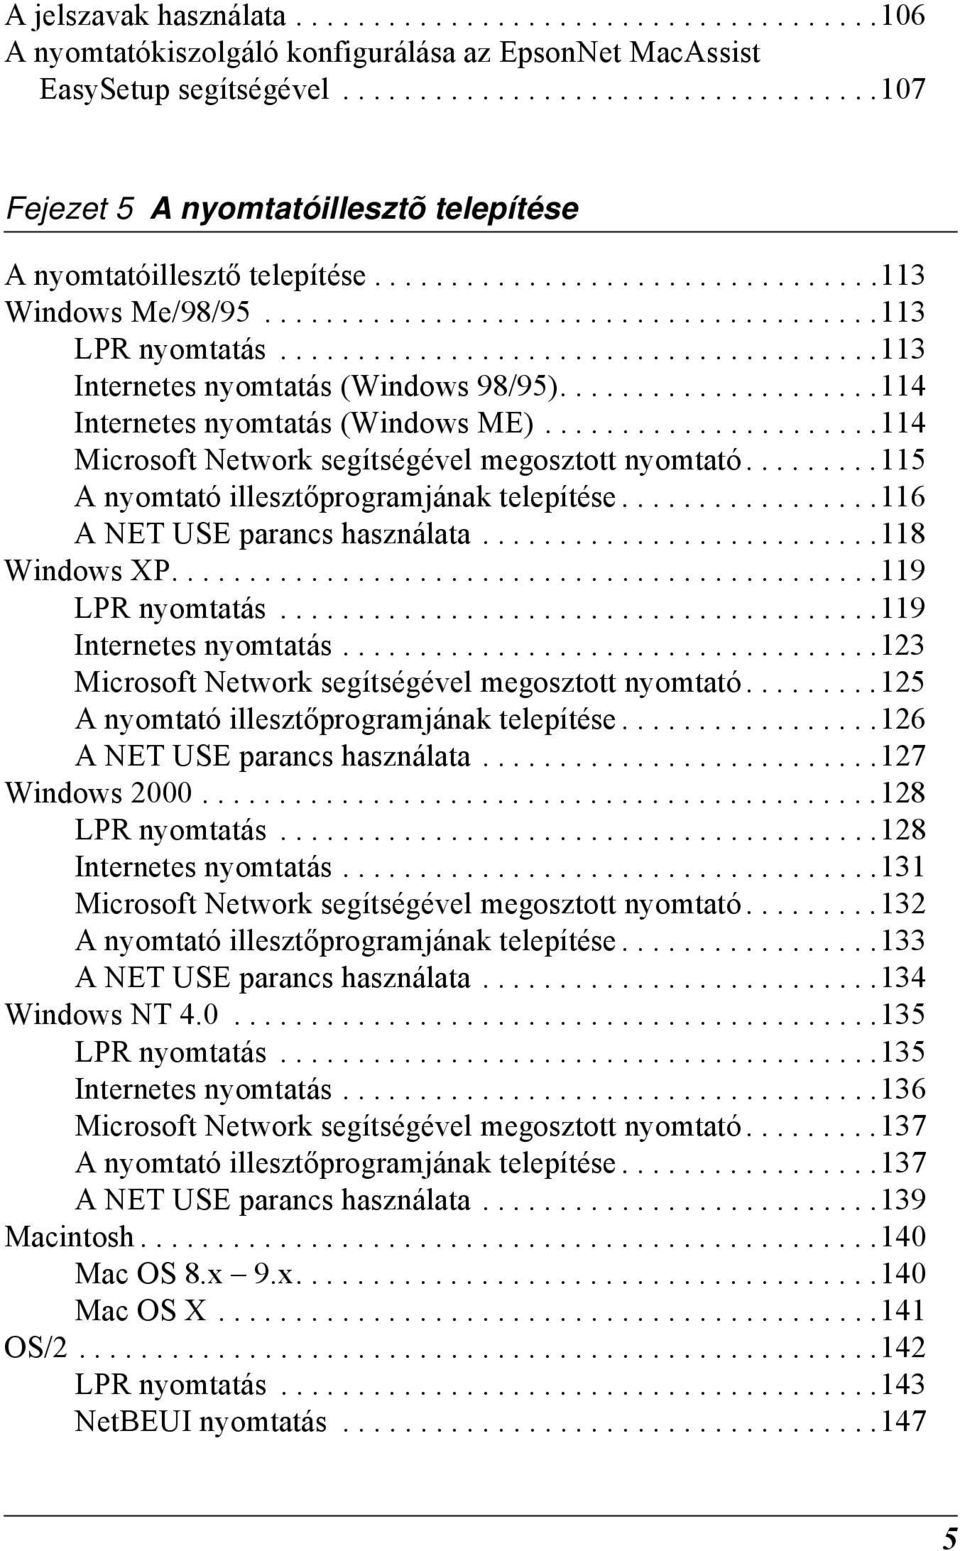 ......................................11 Internetes nyomtatás (Windows 98/9).....................114 Internetes nyomtatás (Windows ME)......................114 Microsoft Network segítségével megosztott nyomtató.